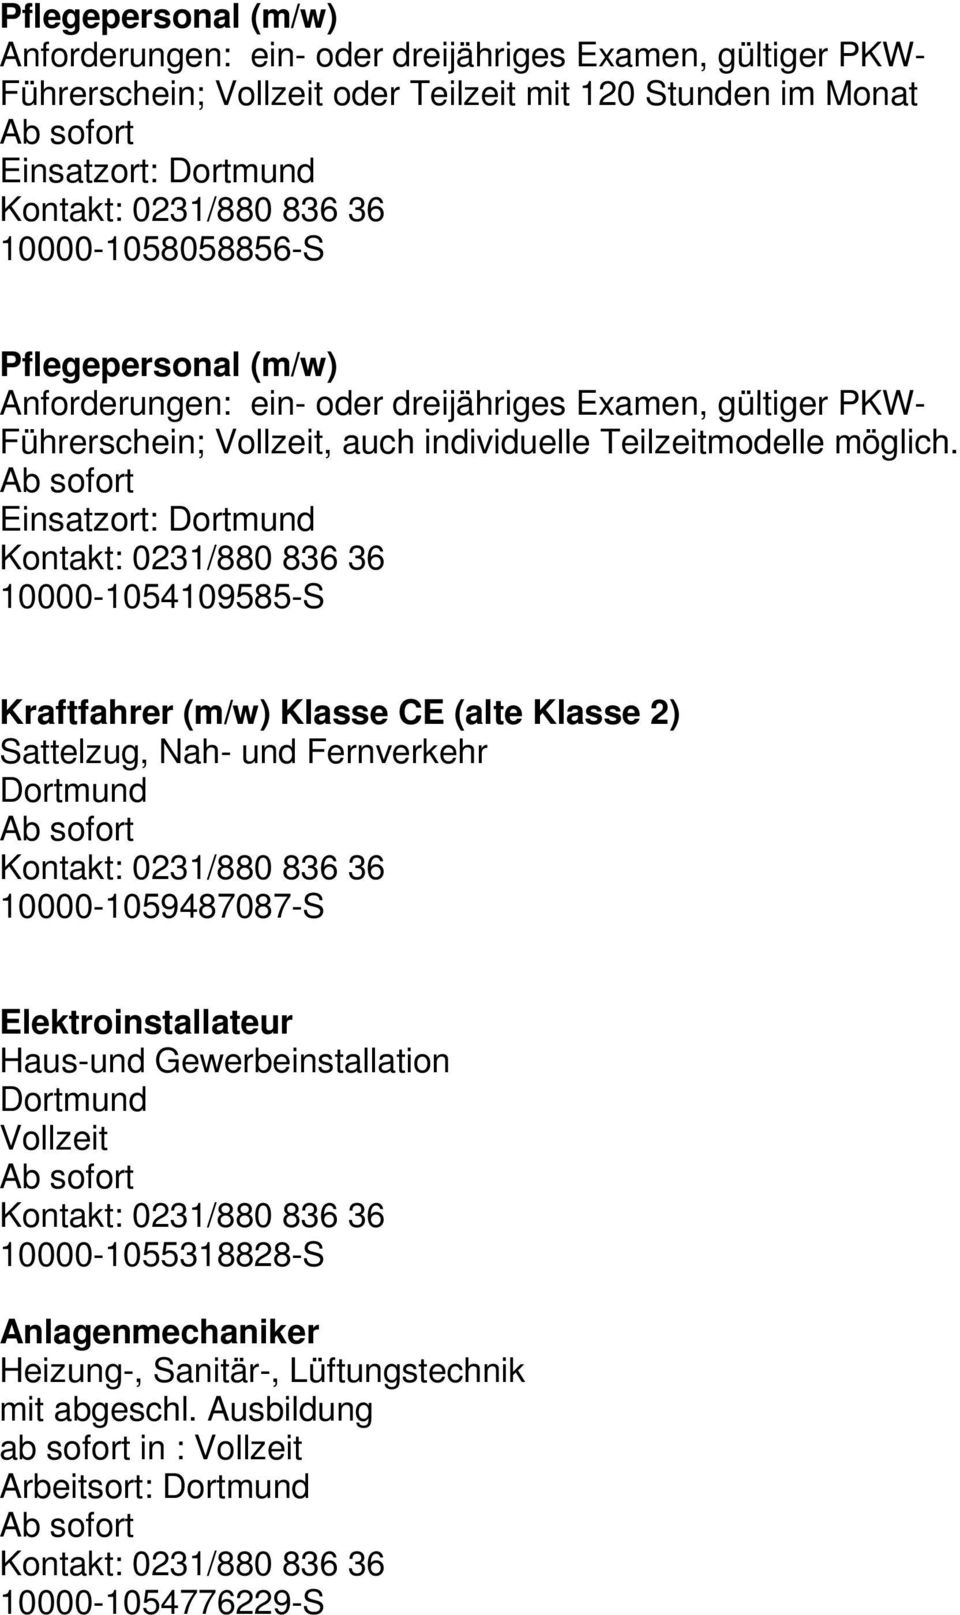 Einsatzort: Dortmund 10000-1054109585-S Kraftfahrer (m/w) Klasse CE (alte Klasse 2) Sattelzug, Nah- und Fernverkehr Dortmund 10000-1059487087-S Elektroinstallateur Haus-und